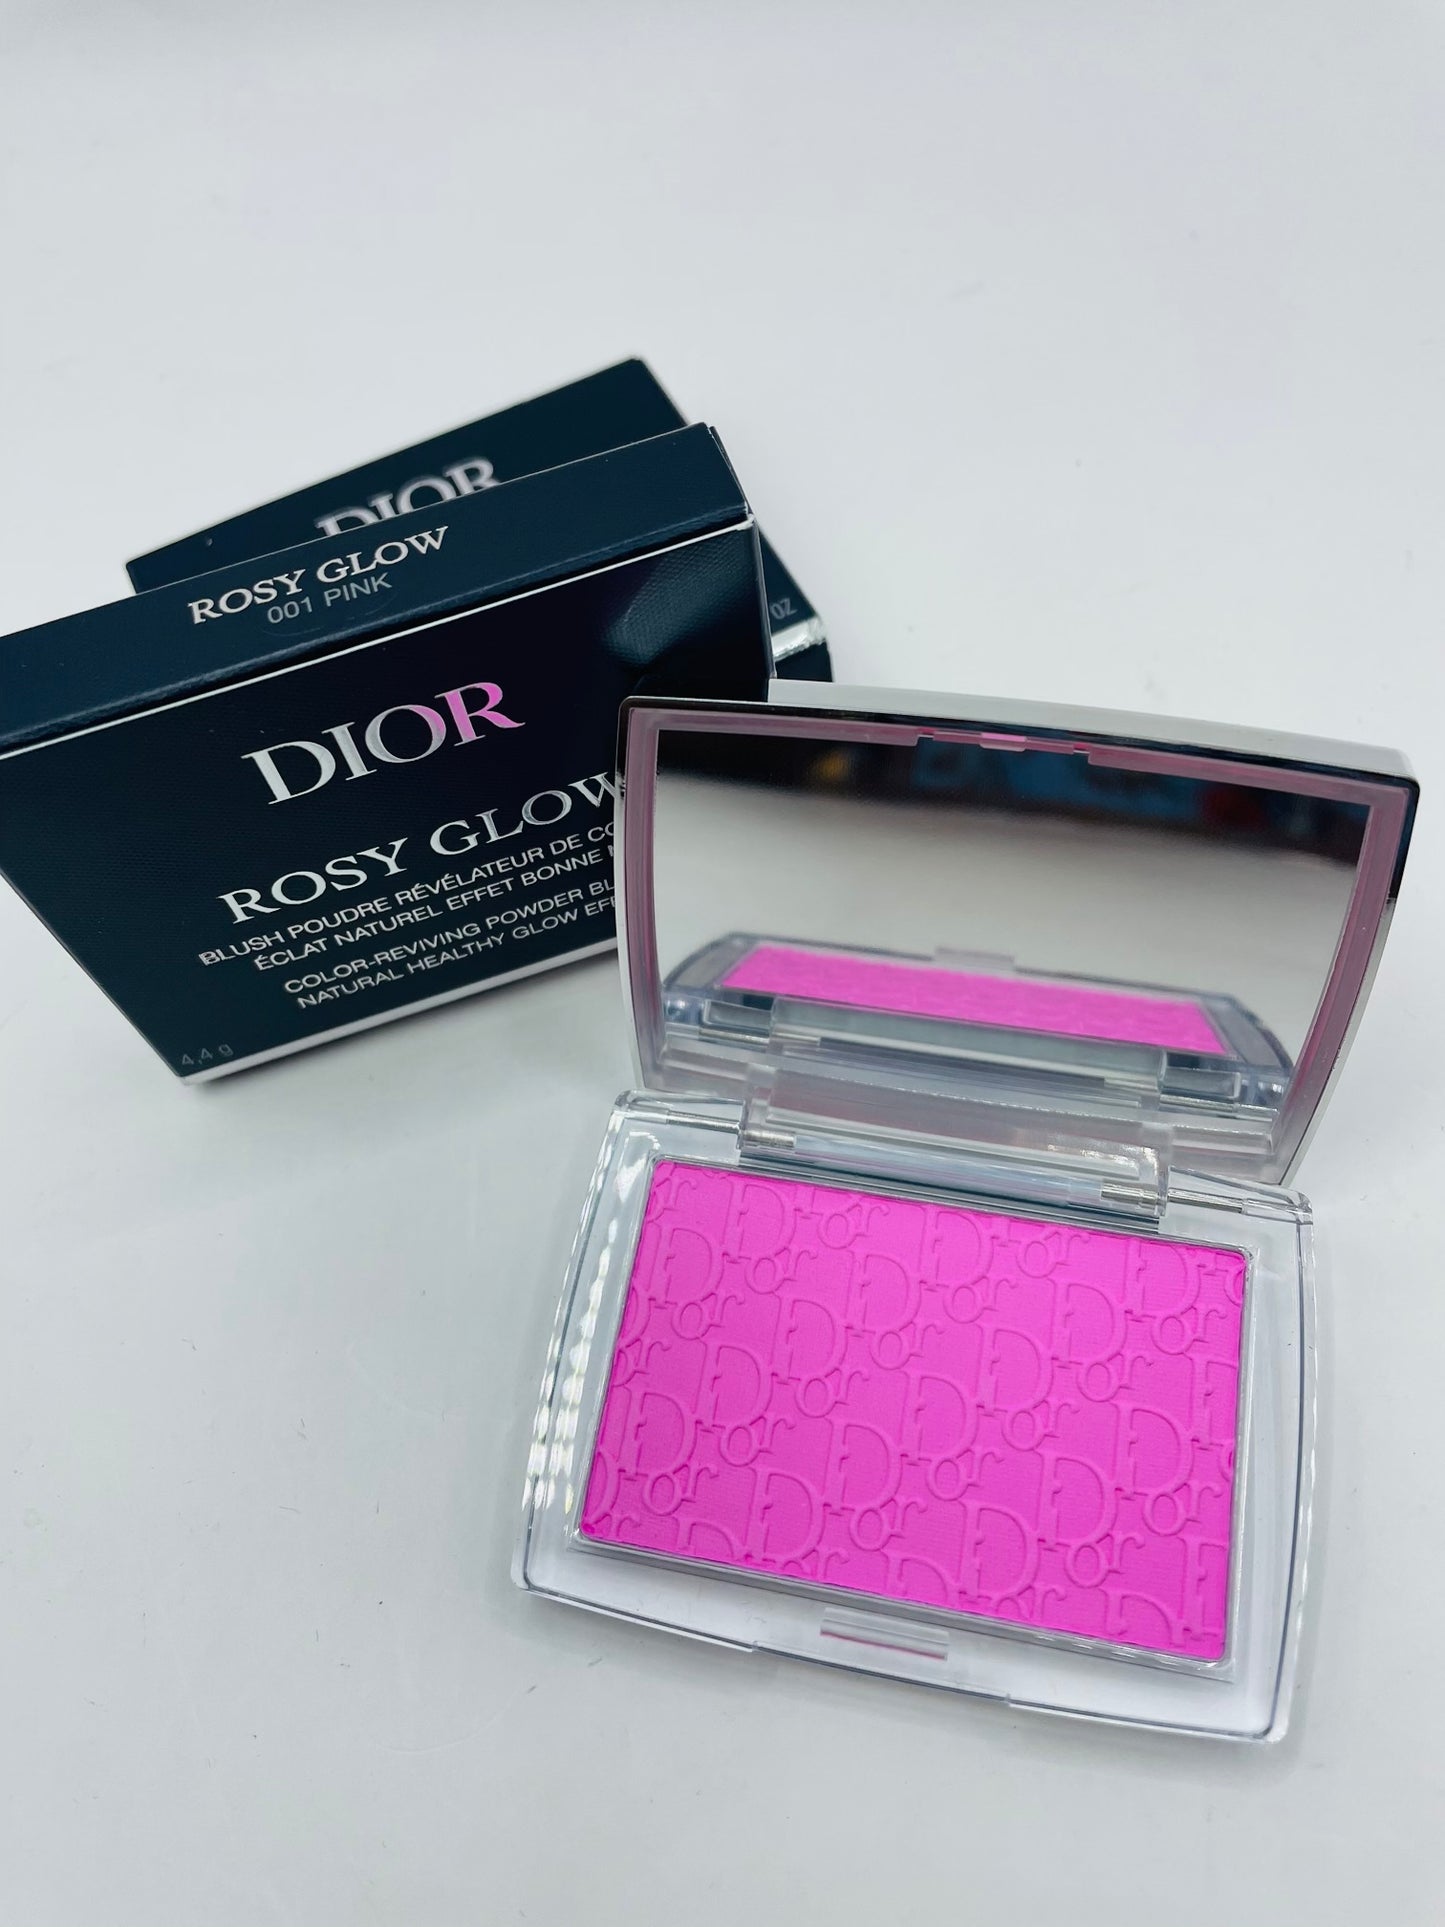 Dior blush